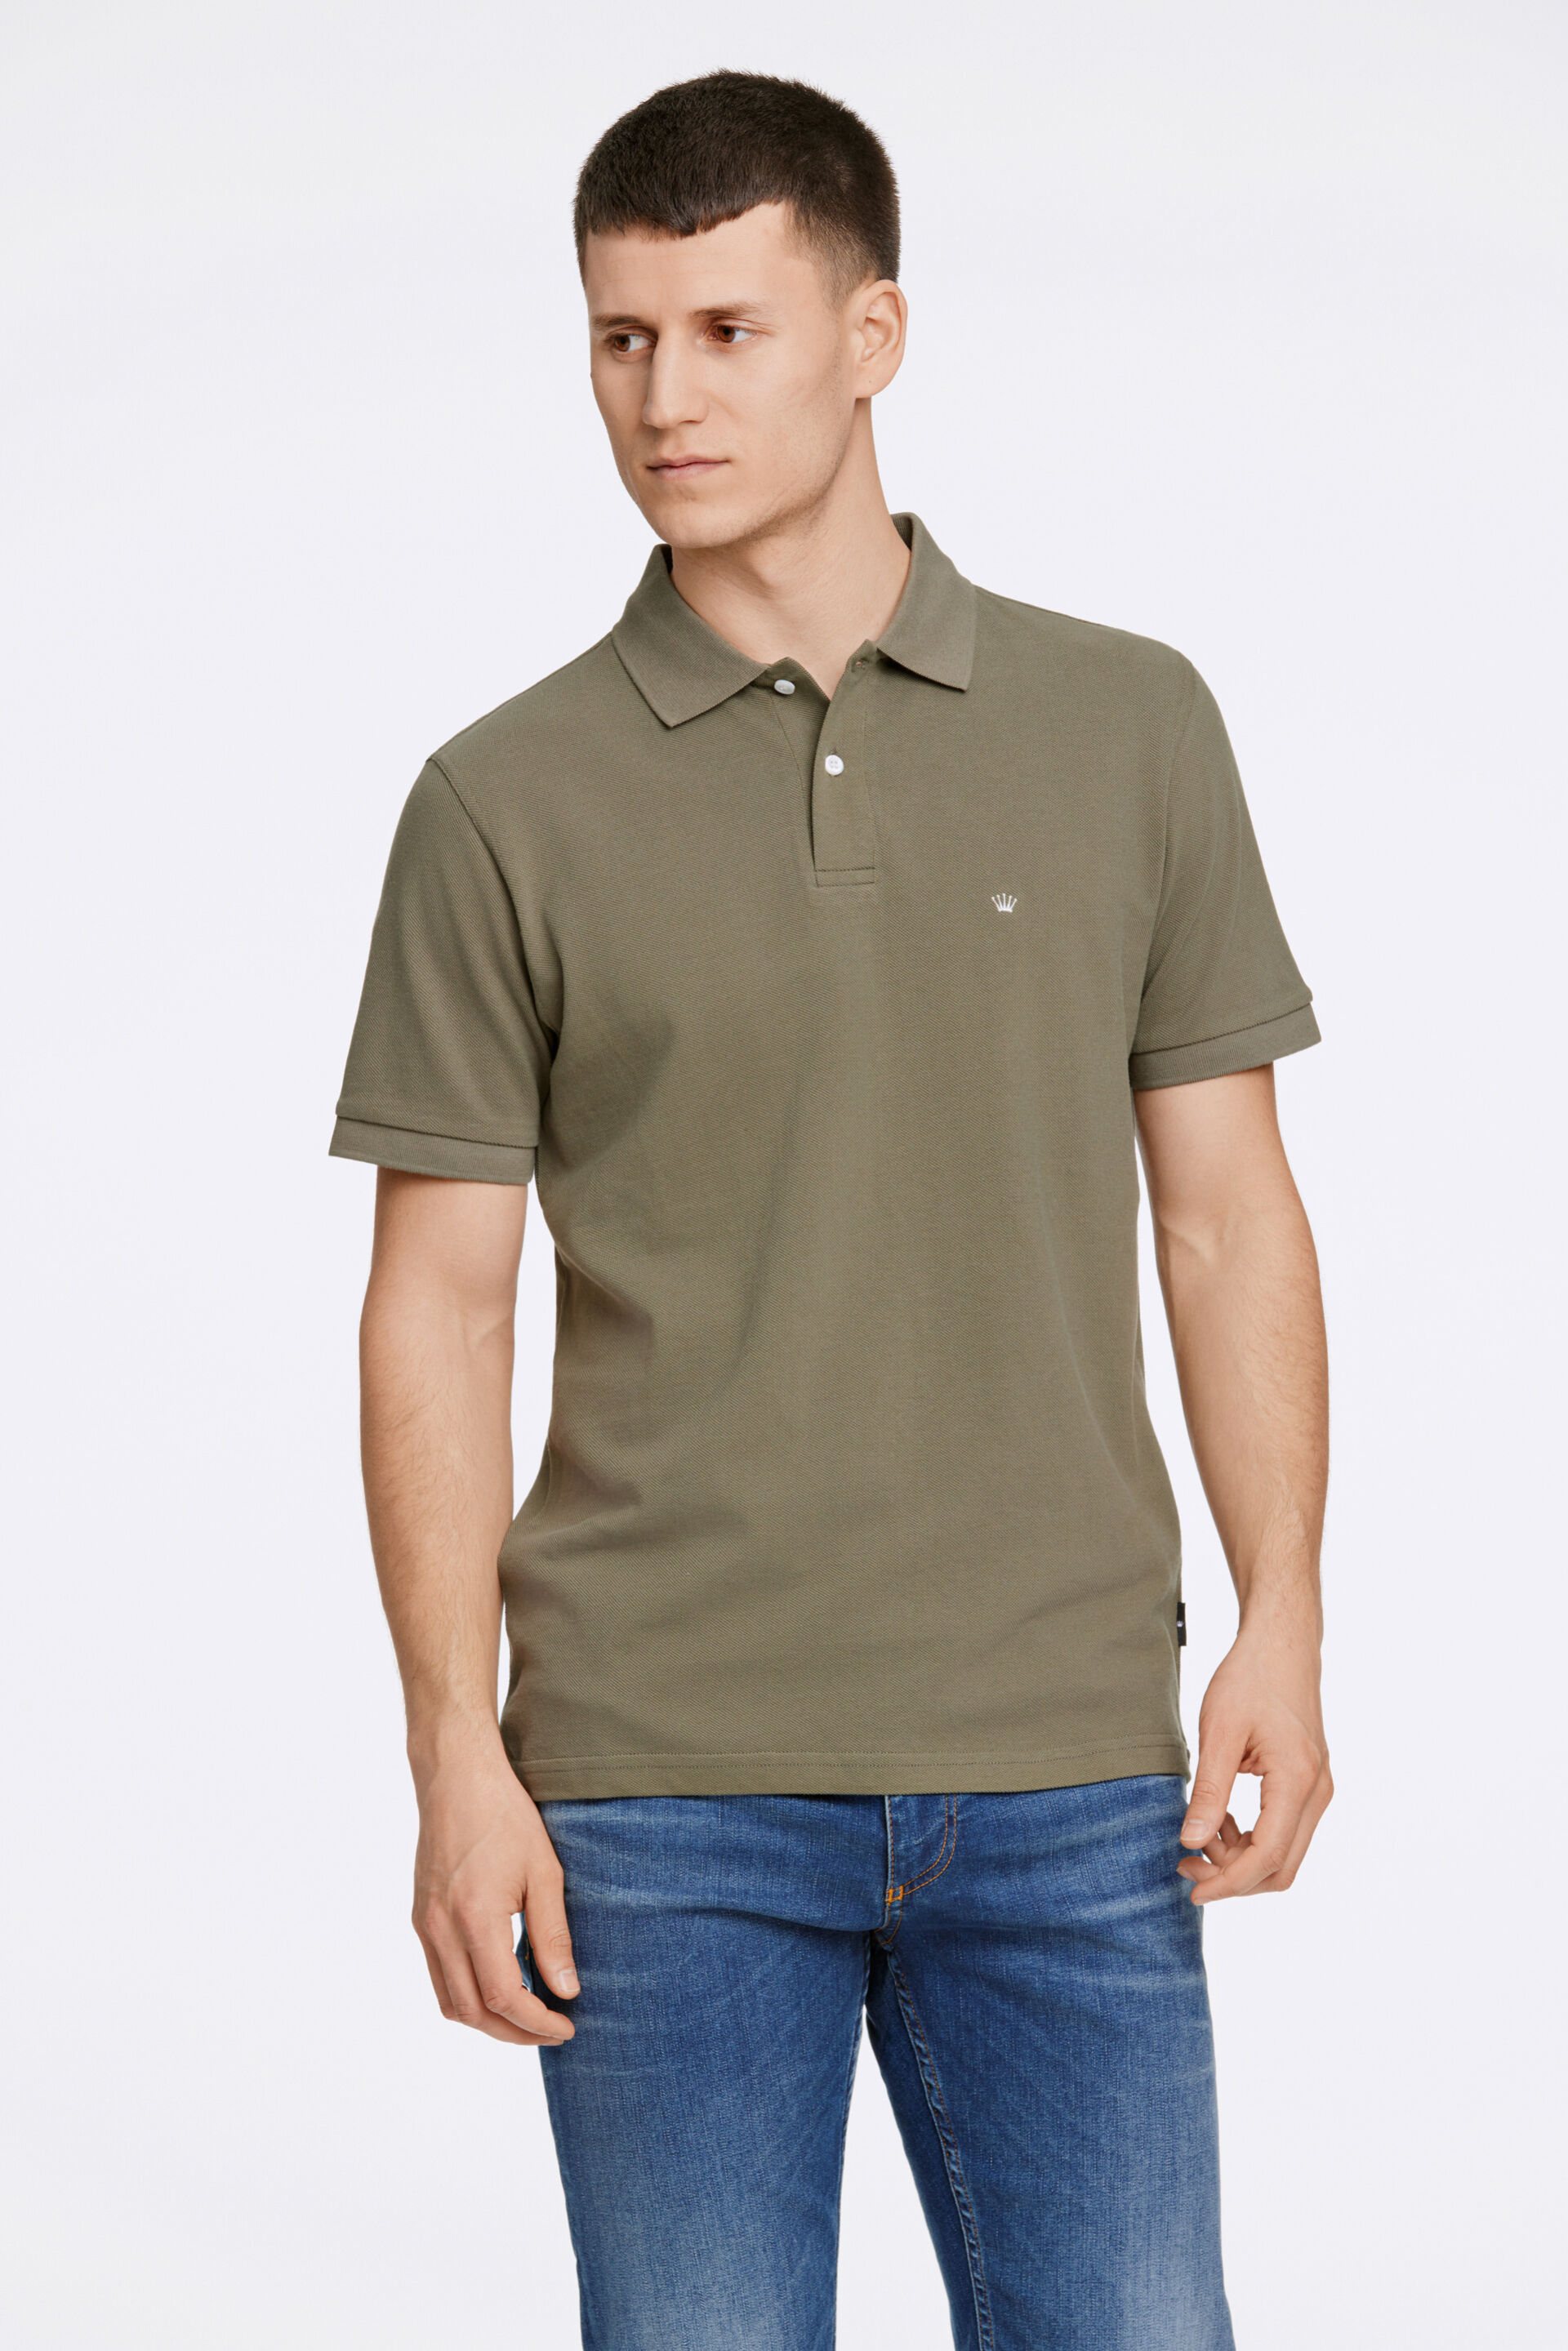 Polo shirt Polo shirt Green 60-452045